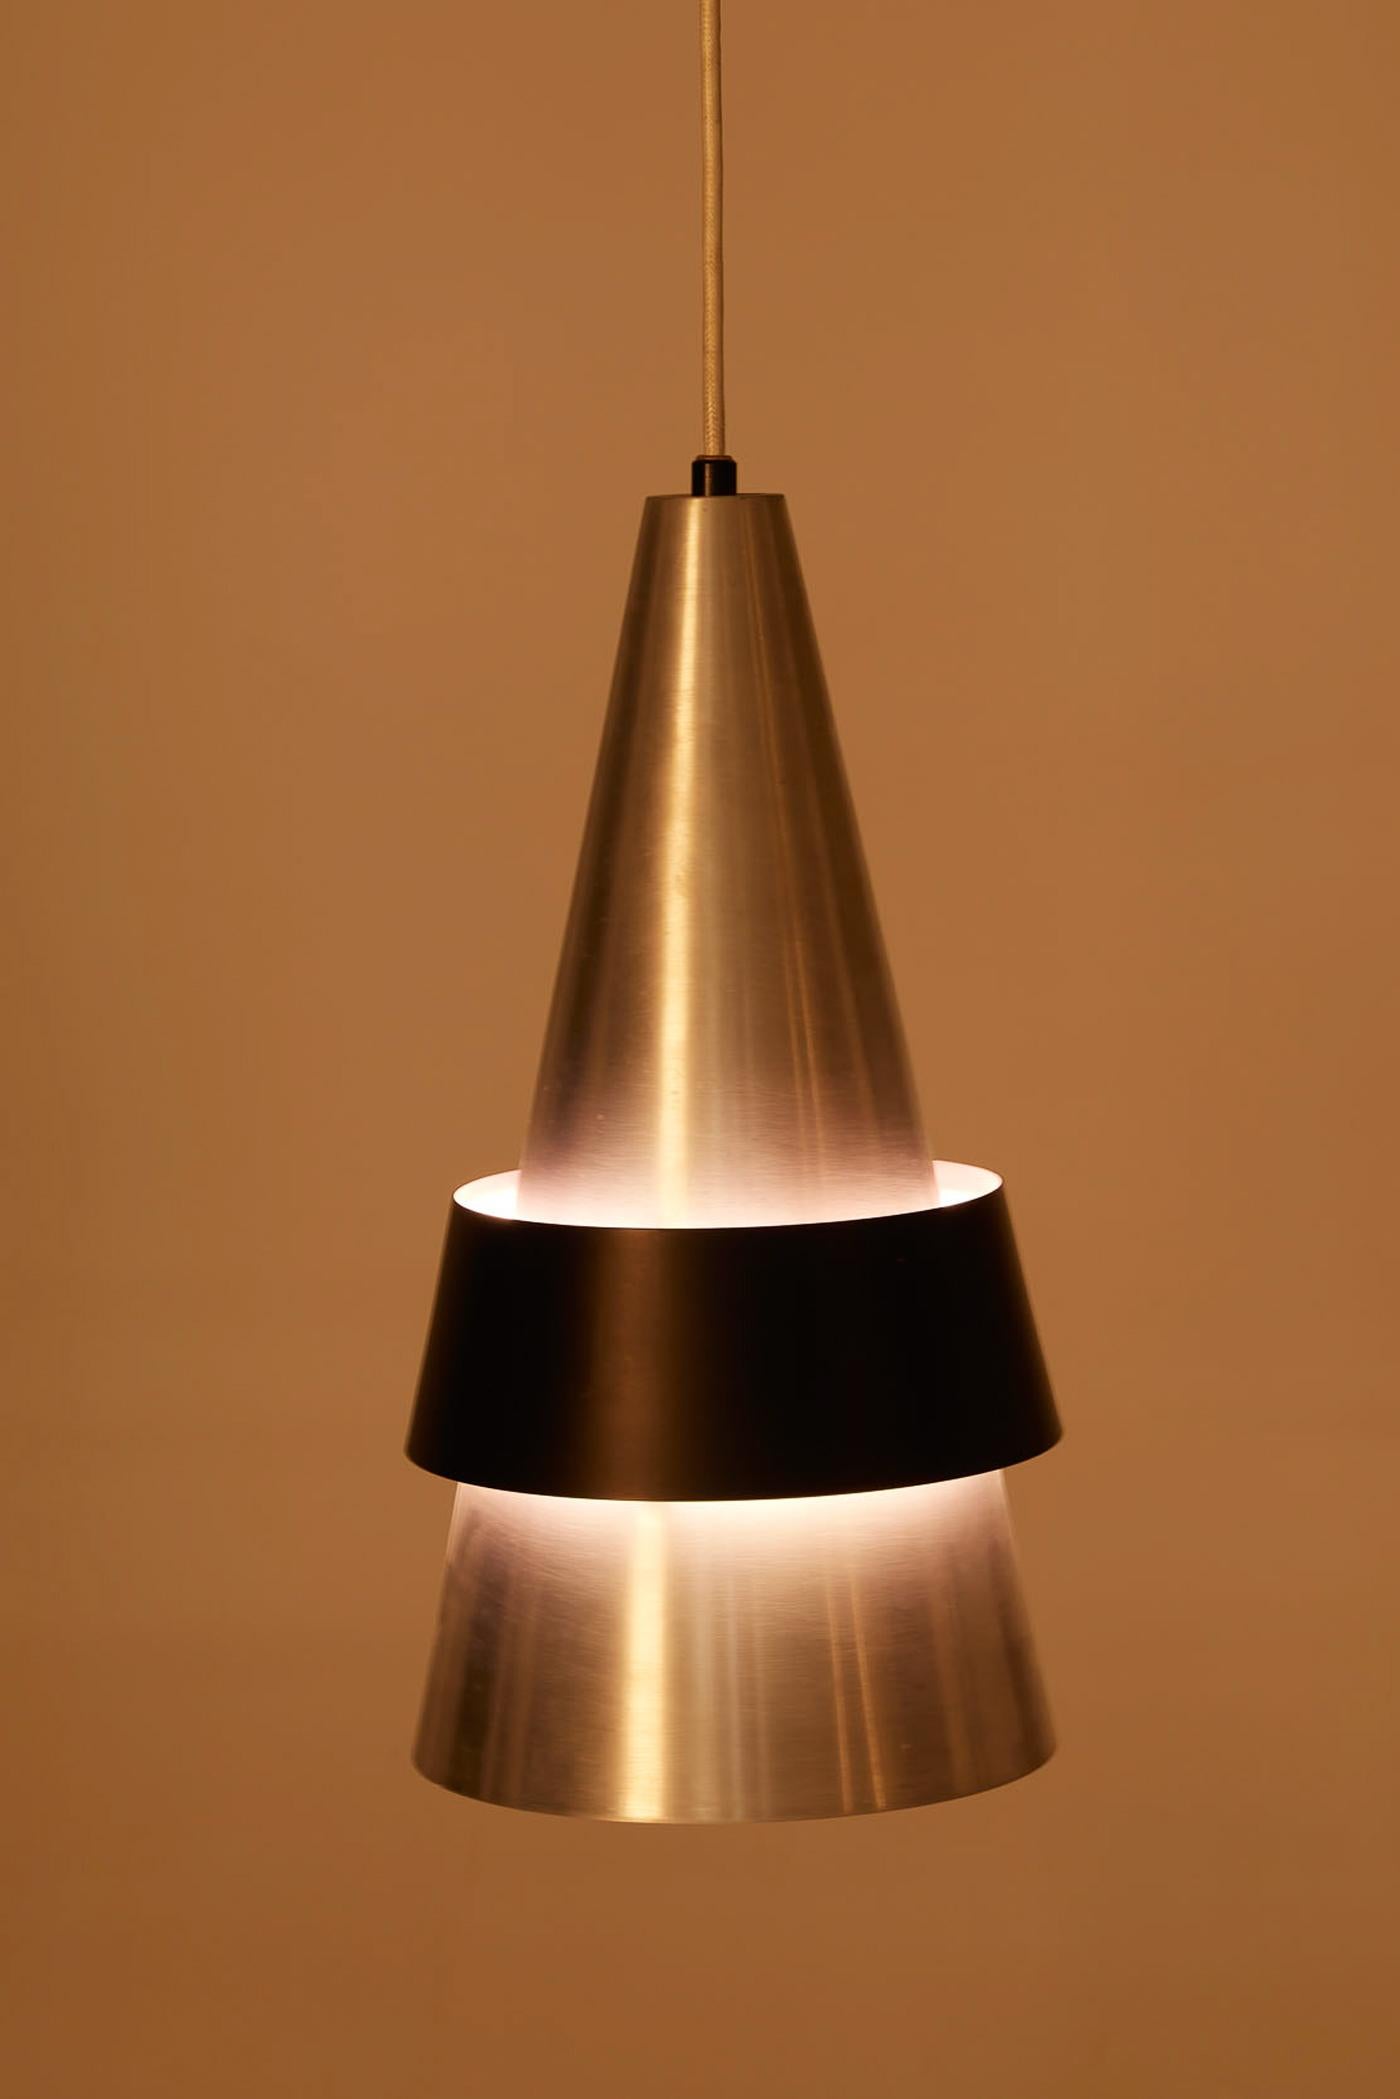 Suspension Corona du designer danois Jo Hammerborg pour Fog & Mørup, datant des années 1960. Le réflecteur conique est en métal brossé avec un anneau en métal laqué noir. Très bon état.
DV430-DV431